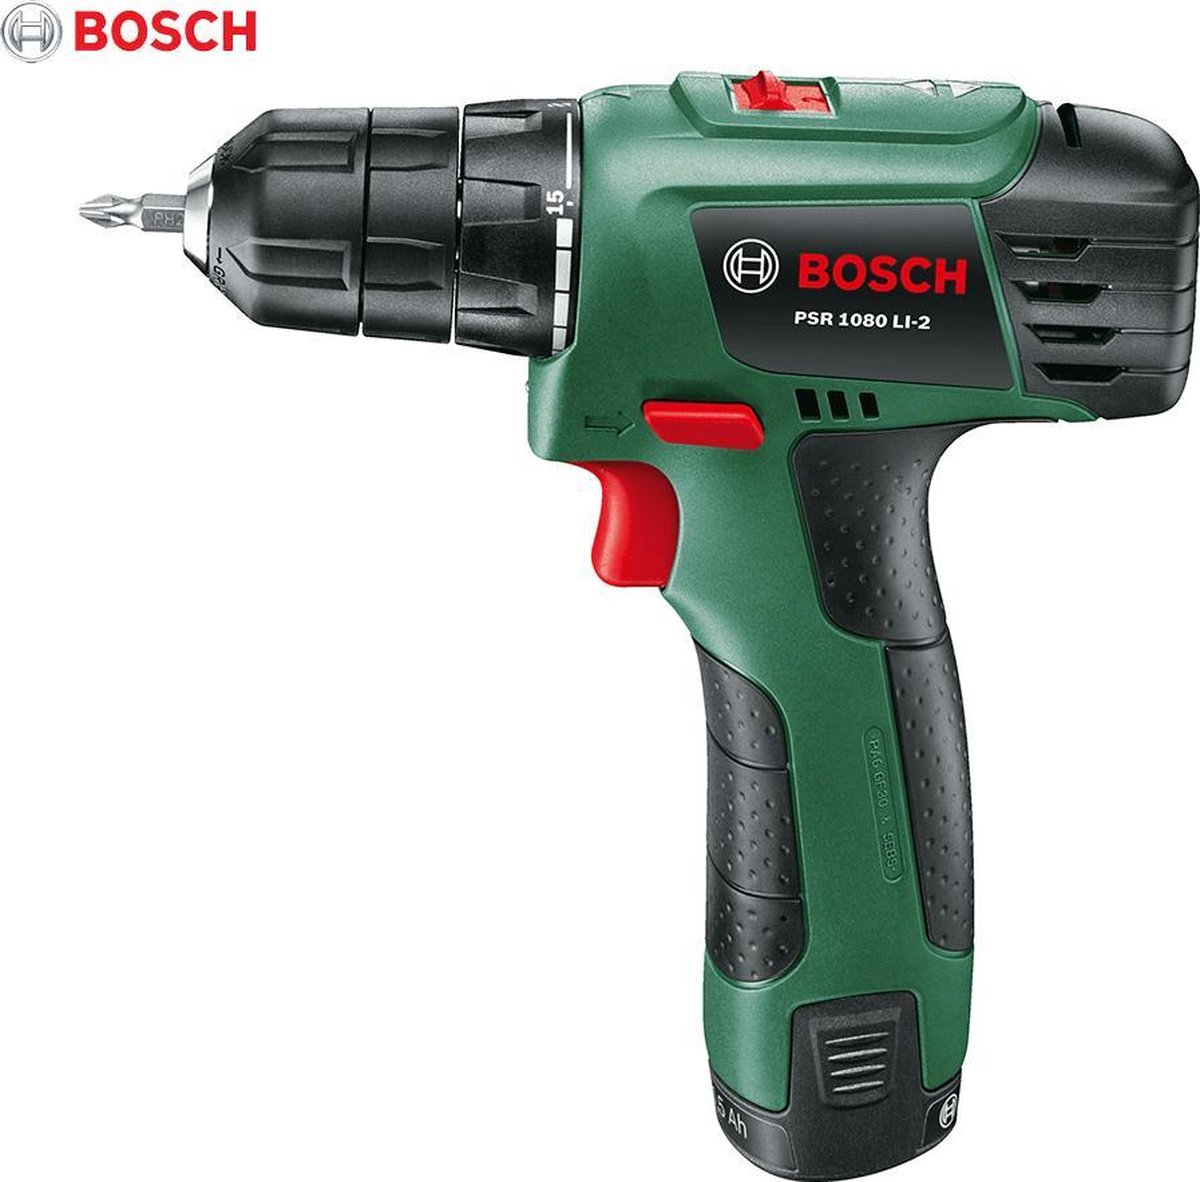 Bosch Accuboormachine - PSR 1200 | bol.com